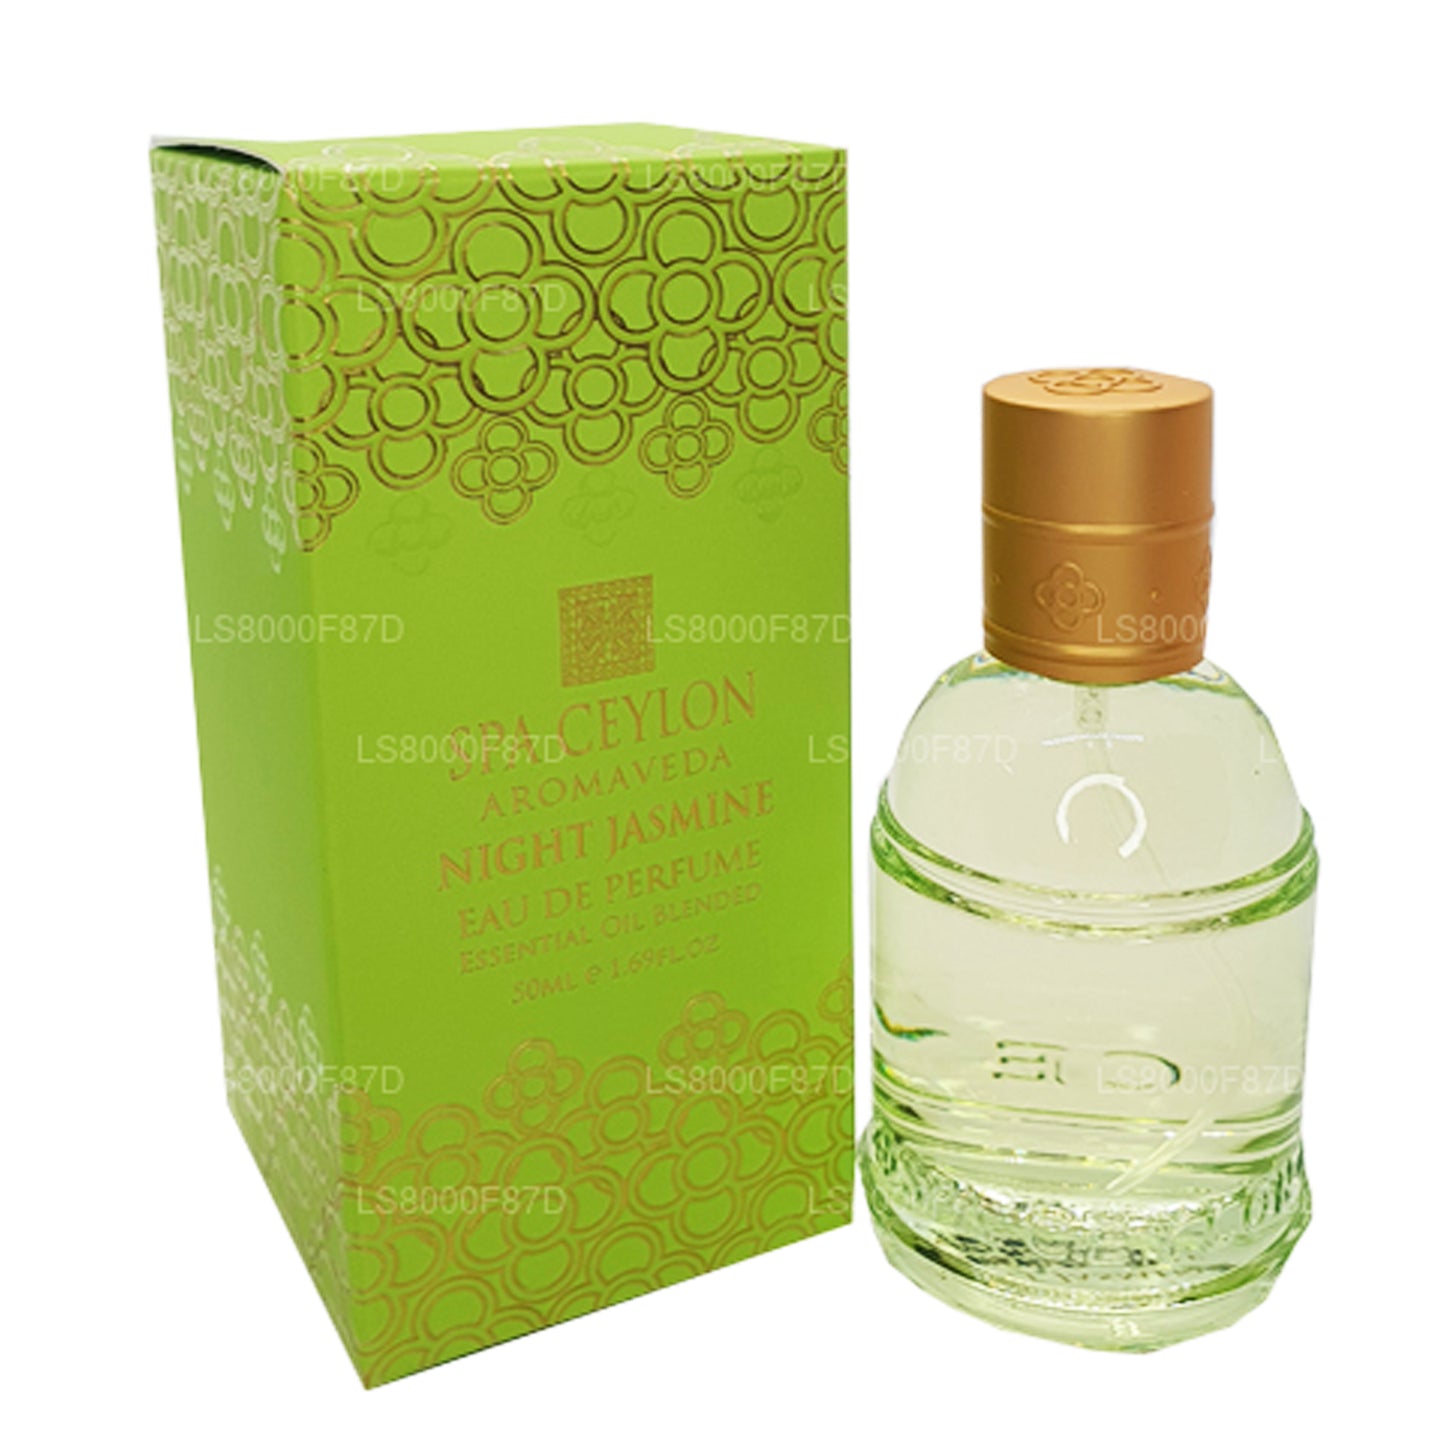 Spa Ceylon Night Jasmine Eau de Parfum, ätherisches Öl, gemischt, 50 ml